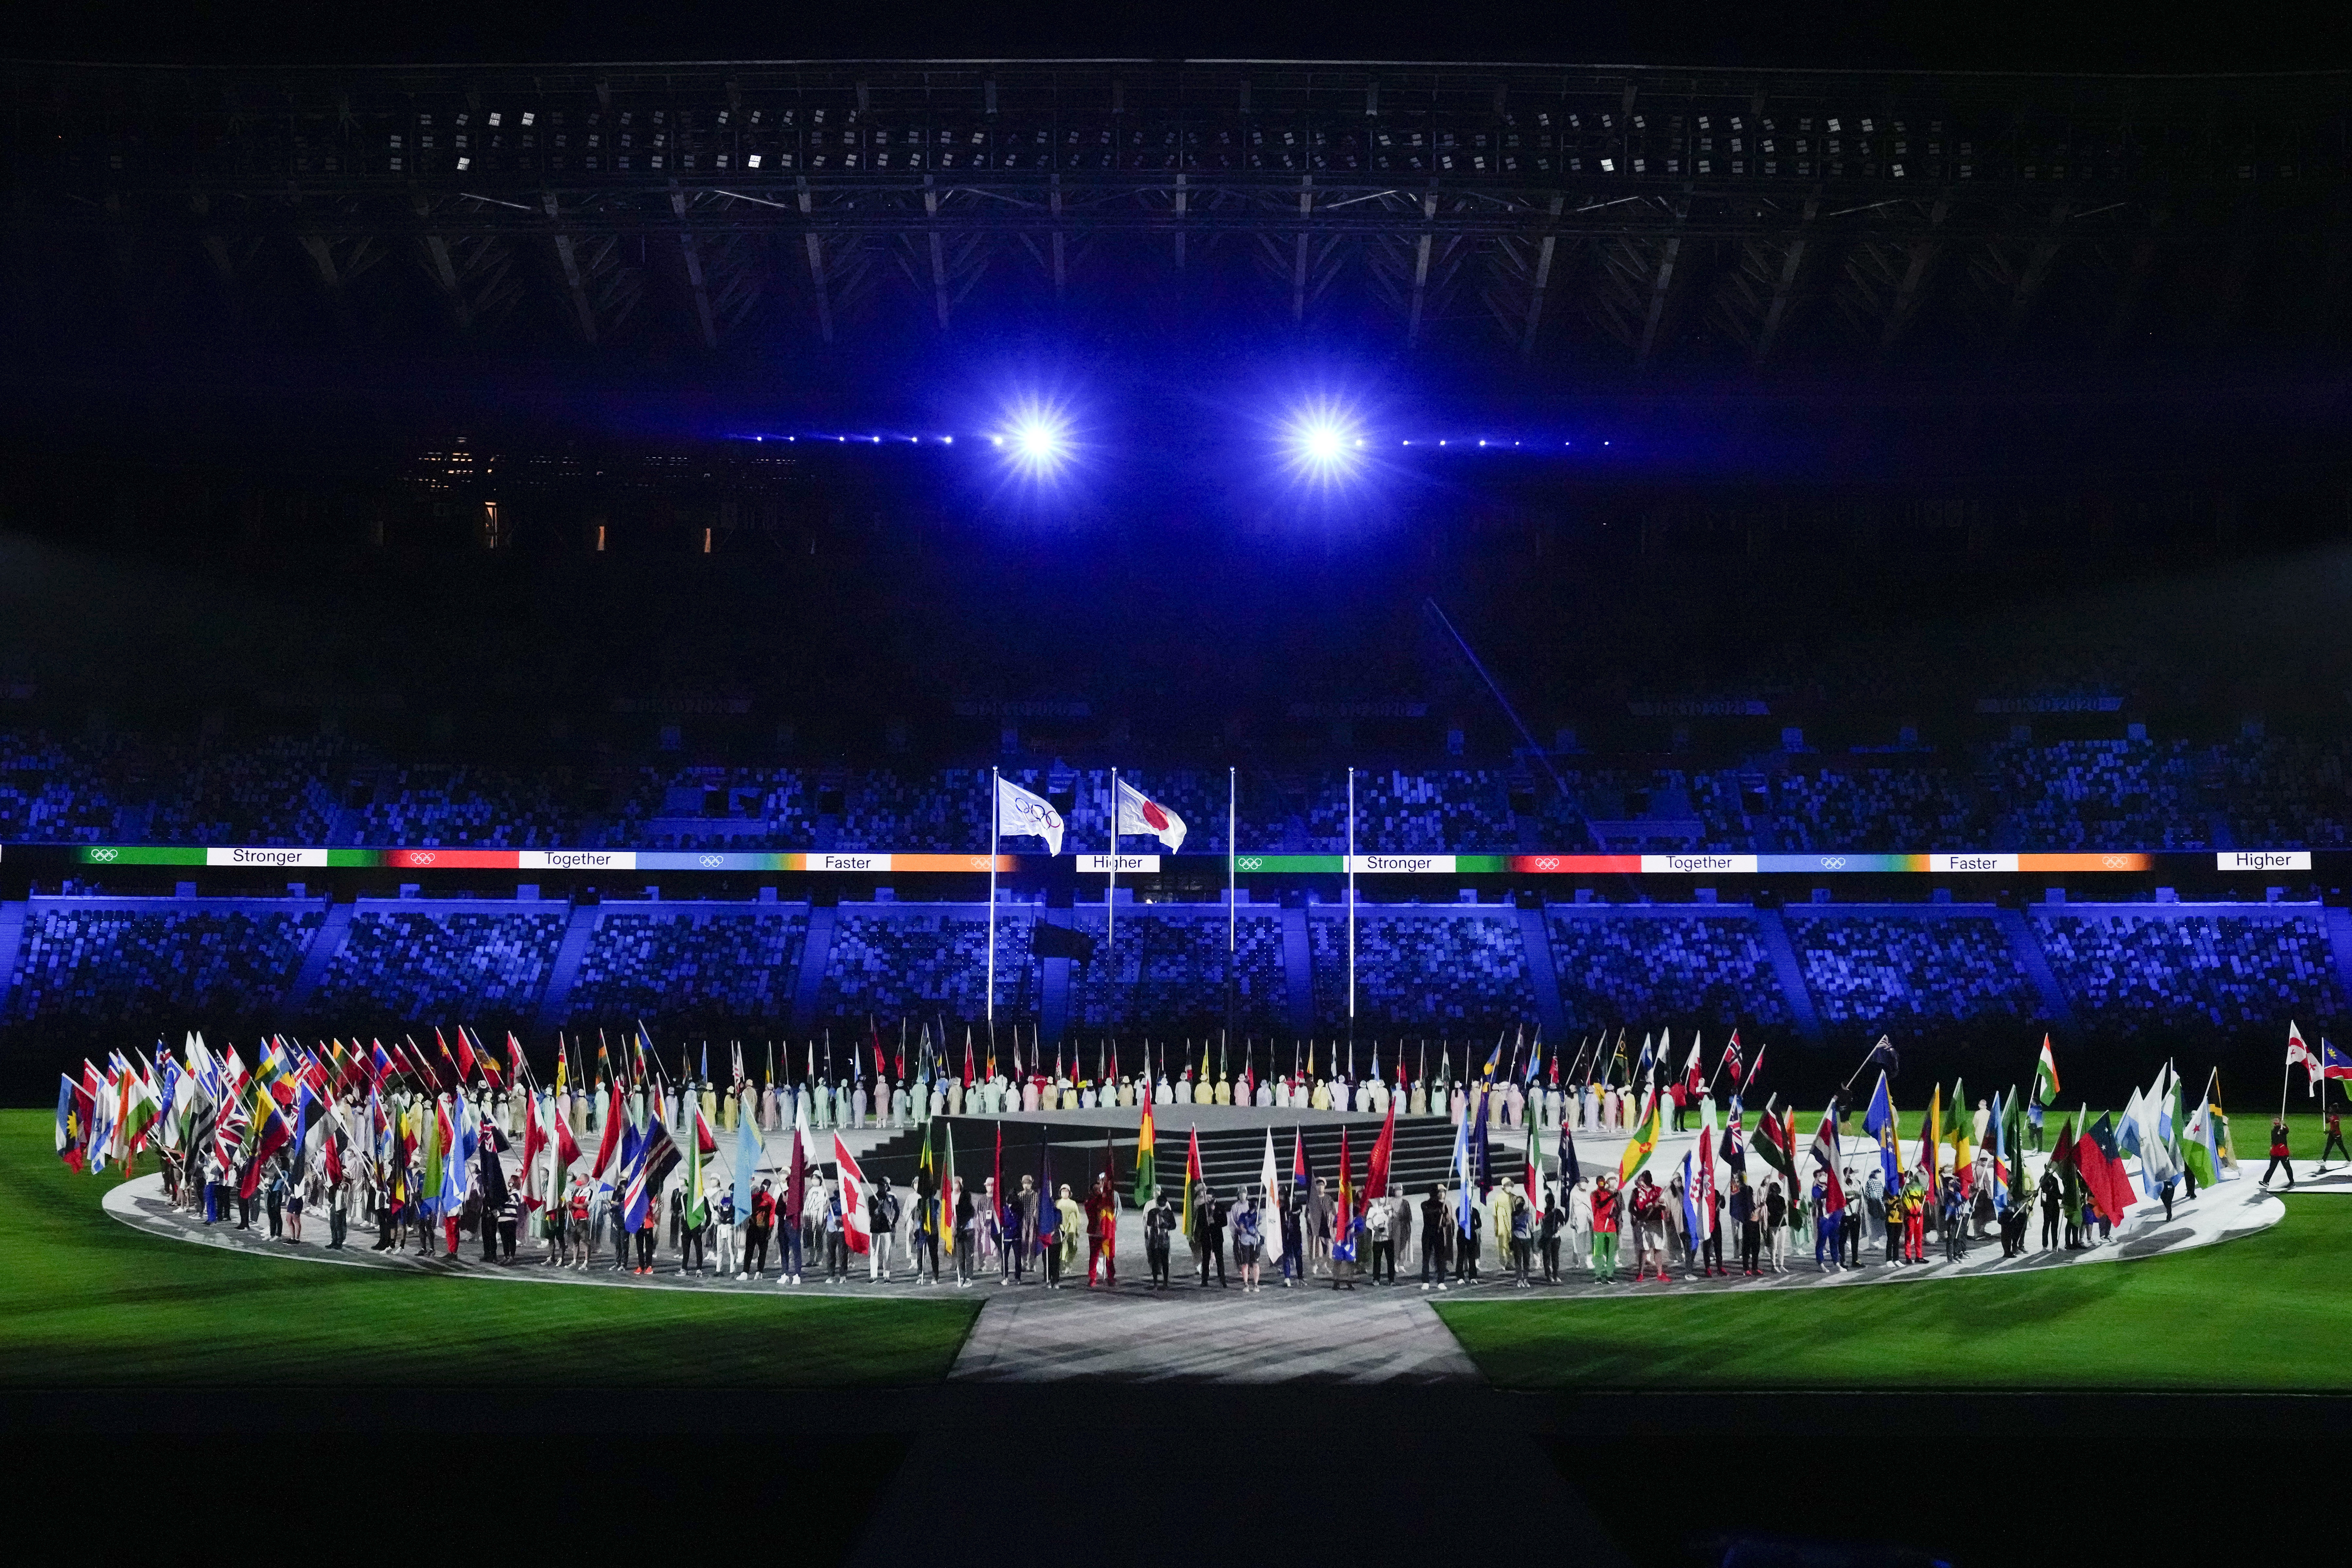 3周转眼过去，东京奥运在冠病疫情下圆满结束，图为闭幕式上的各代表团旗帜。（美联社照片）

